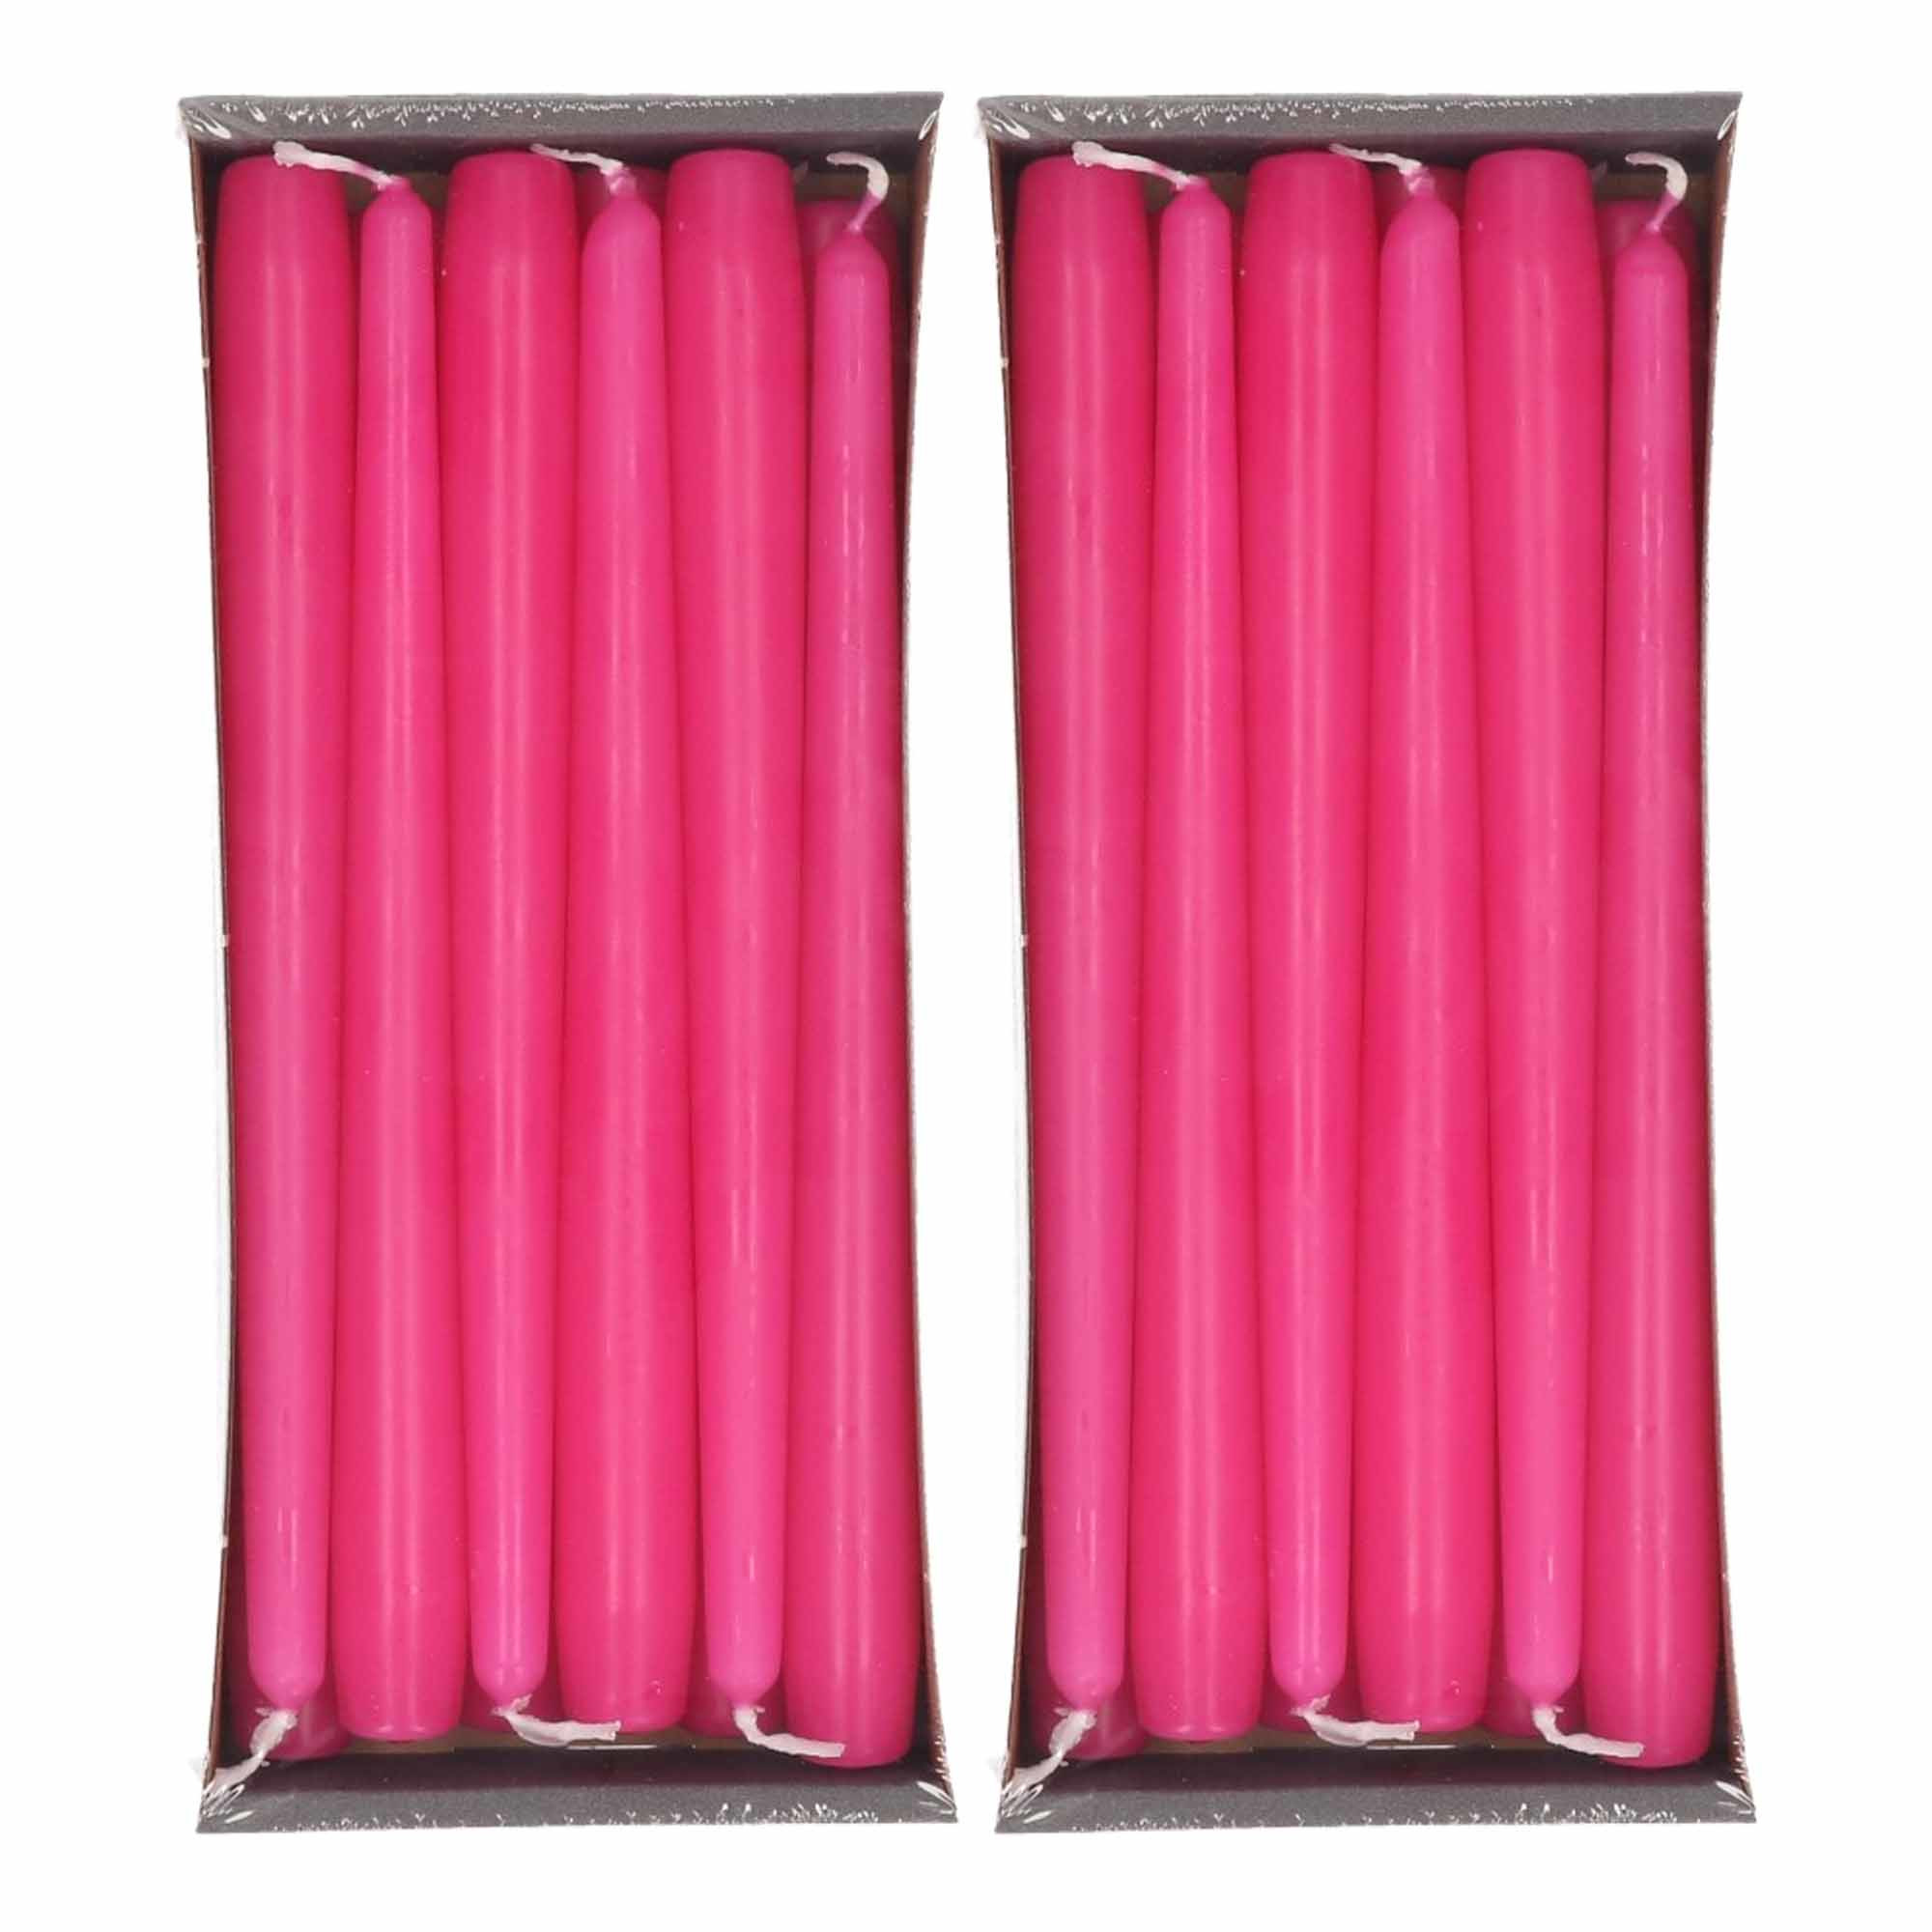 24x Lange kaarsen fuchia roze 25 cm 8 branduren dinerkaarsen/tafelkaarsen